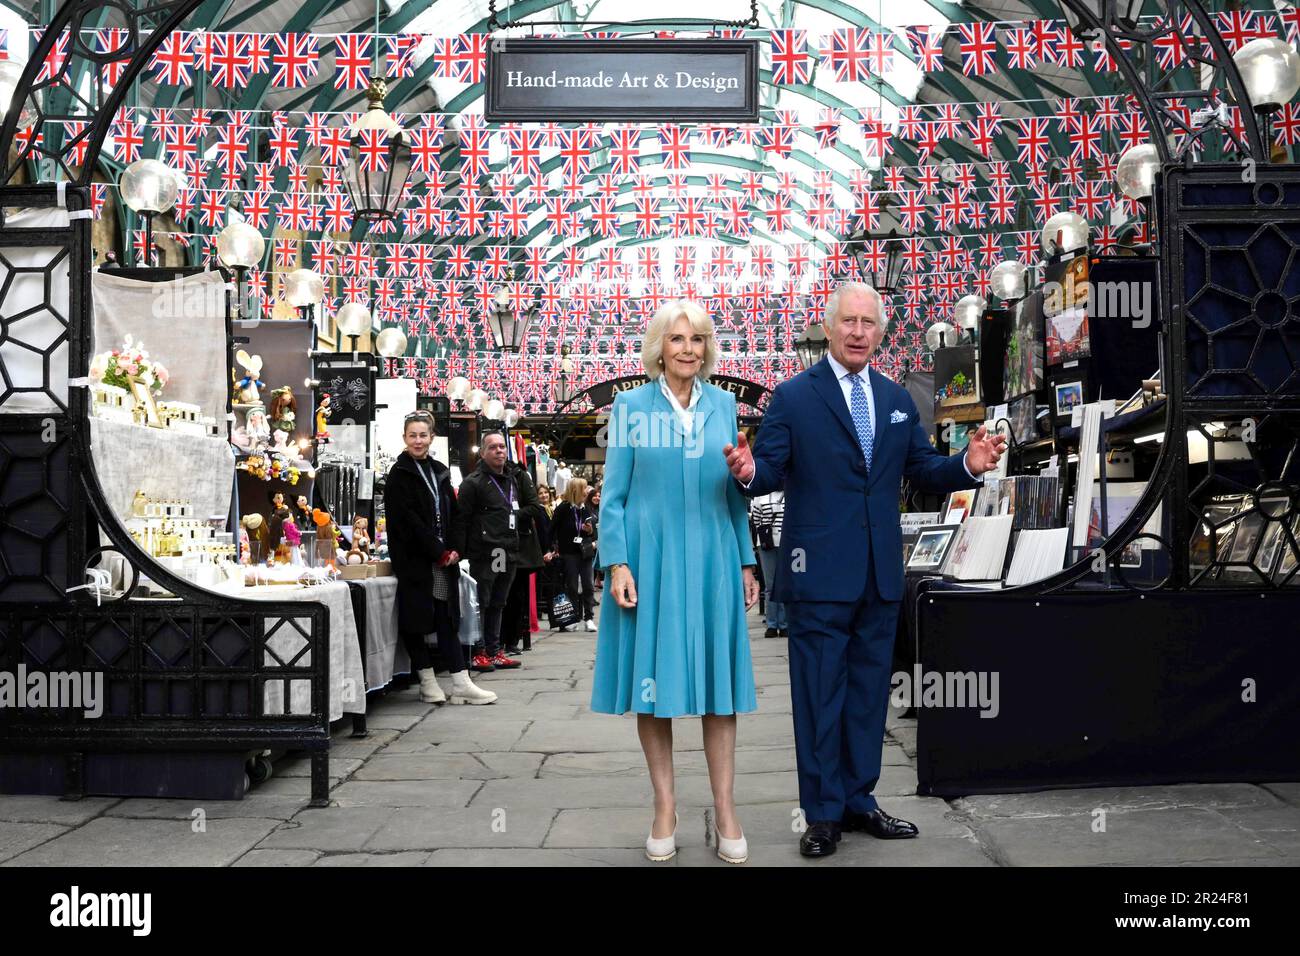 King Charles III. Und Queen Camilla auf dem Covent Garden Apple Market, um Mitglieder der lokalen Gemeinde und Händler beim Besuch von Covent Garden, London, zu treffen. Bilddatum: Mittwoch, 17. Mai 2023. Stockfoto